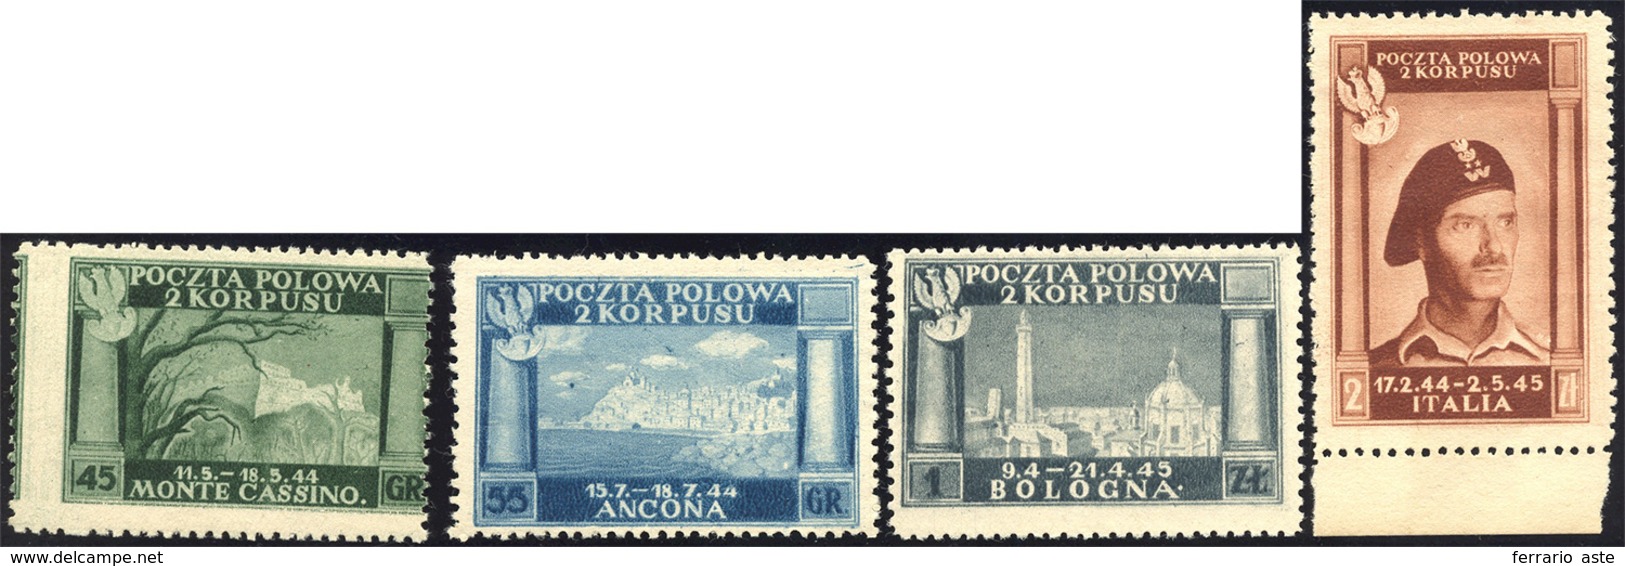 1538 1946 - Vittorie Polacche, Carta Bianca (5/8), Senza Gomma Come Sempre, Perfetti.... - 1946-47 Corpo Polacco